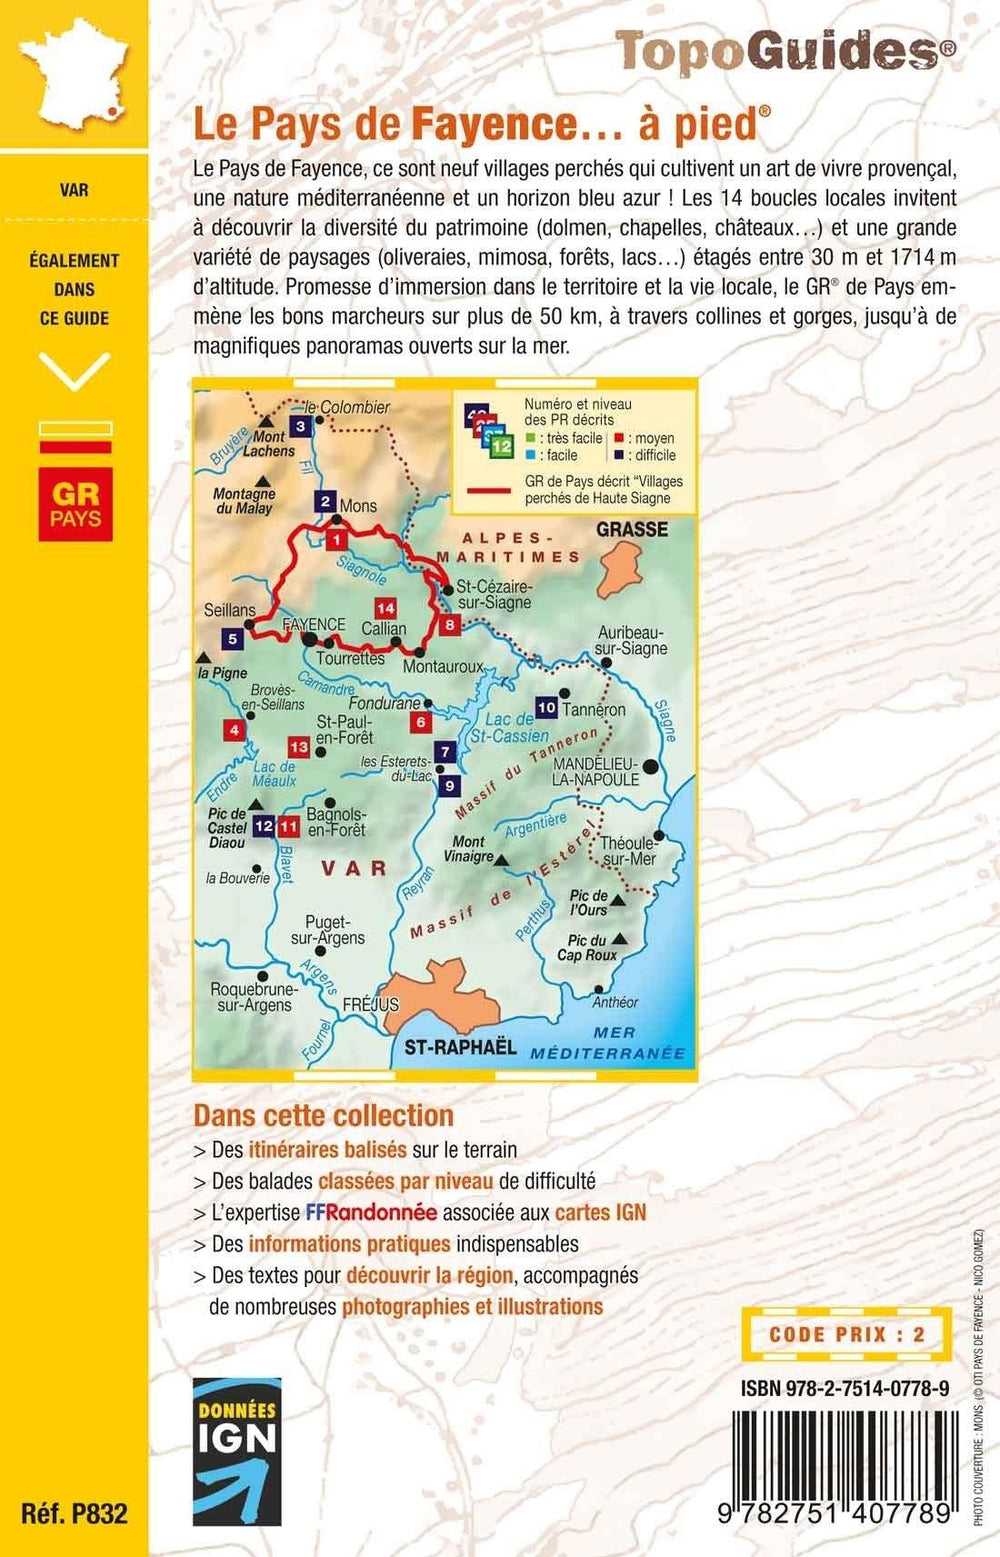 Topoguide de randonnée - Le pays de Fayence à pied | FFR guide de randonnée FFR - Fédération Française de Randonnée 